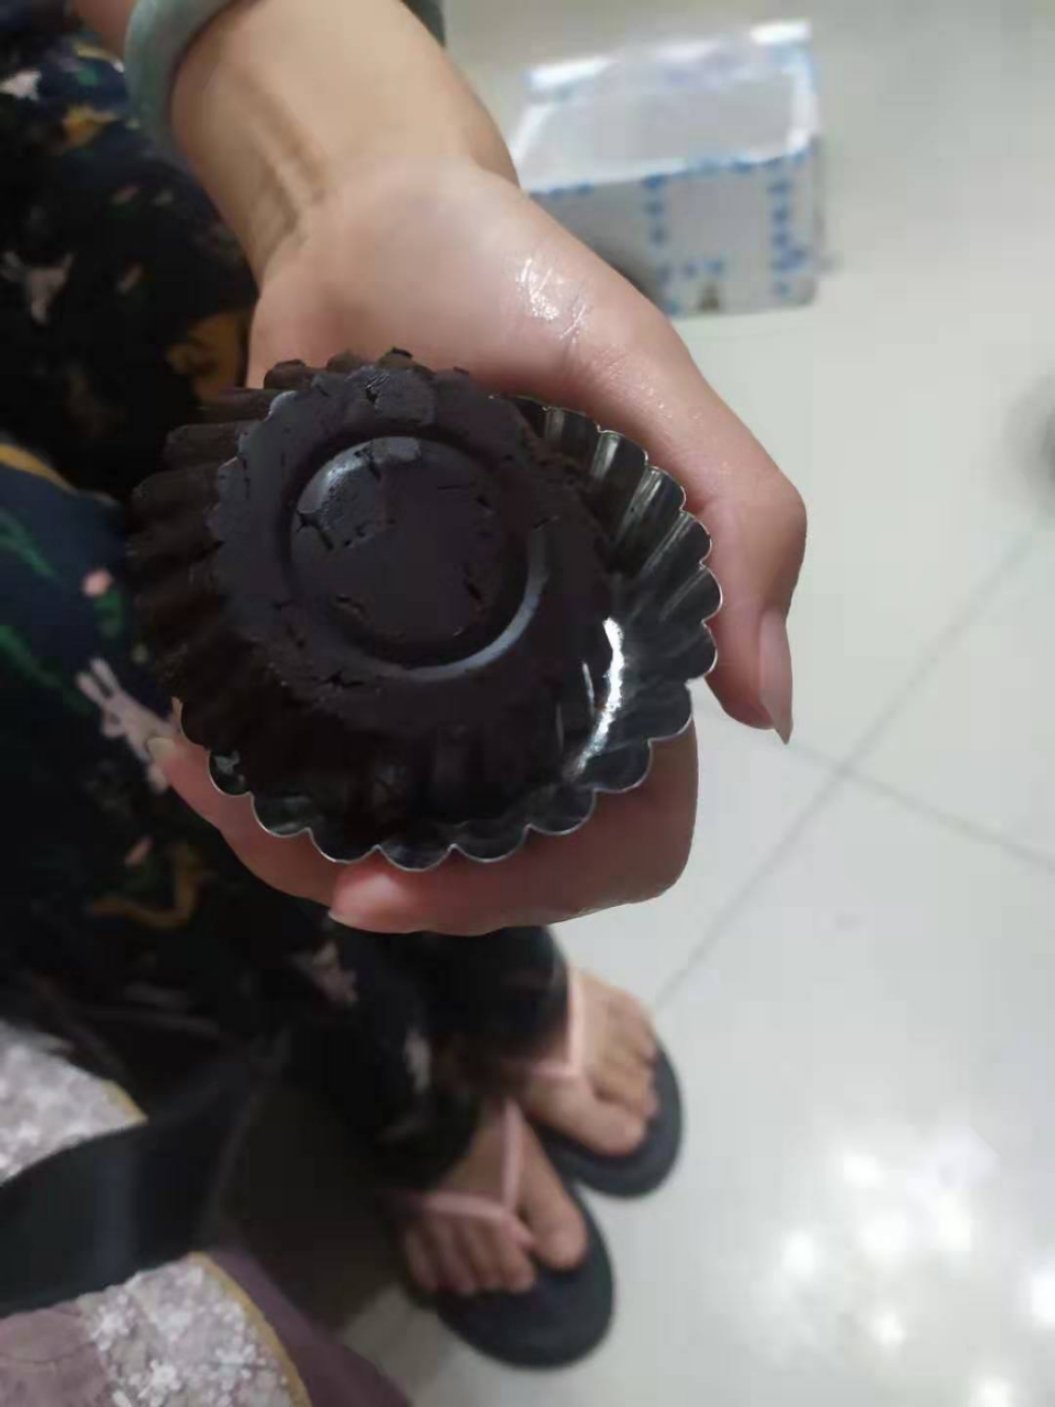 可可粉自制黑巧克力